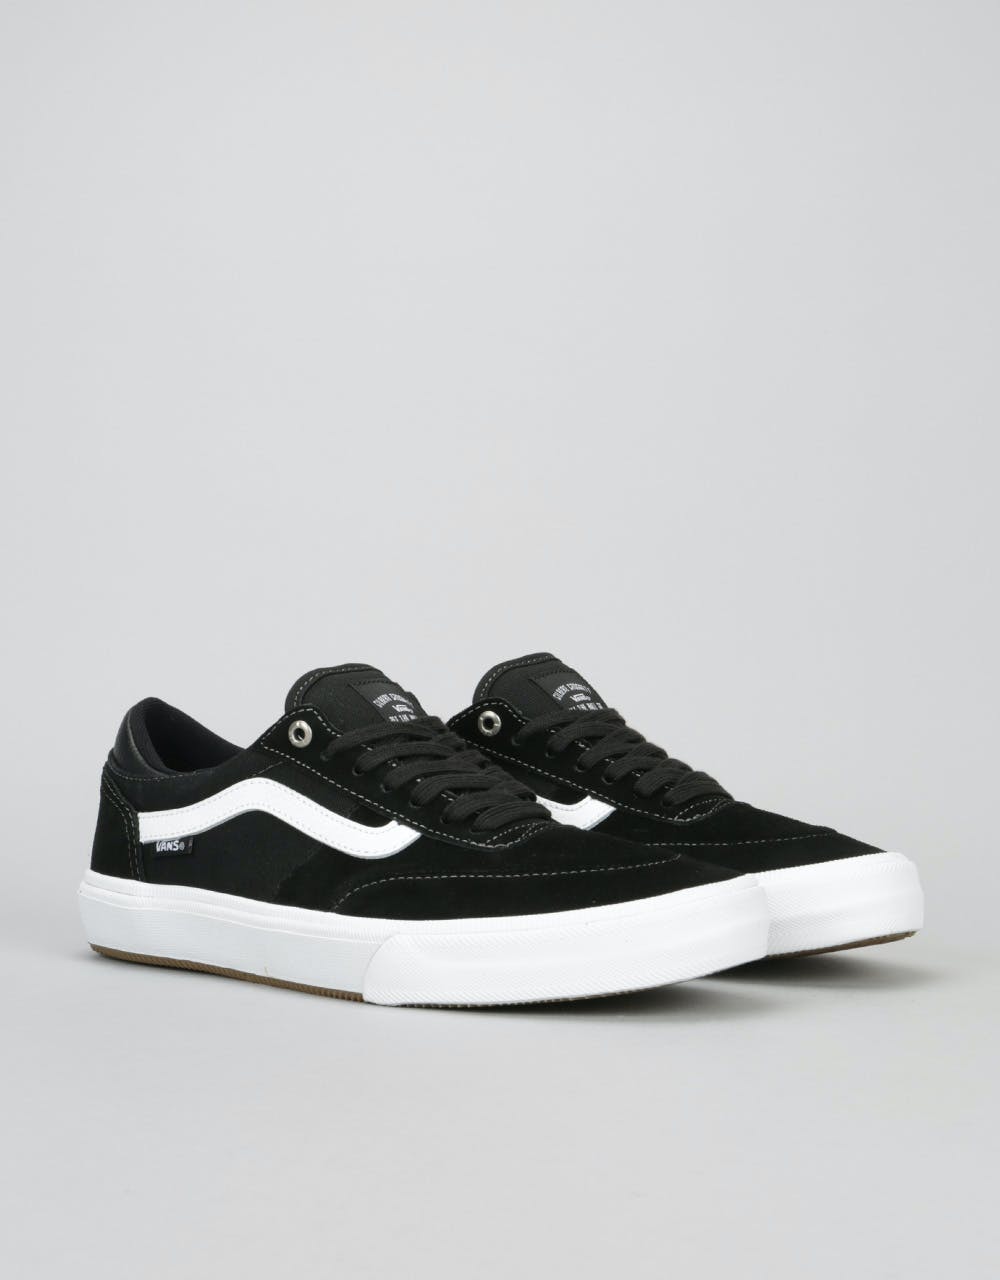 Vans Gilbert Crockett 2 Pro Skate Shoes - Black/White